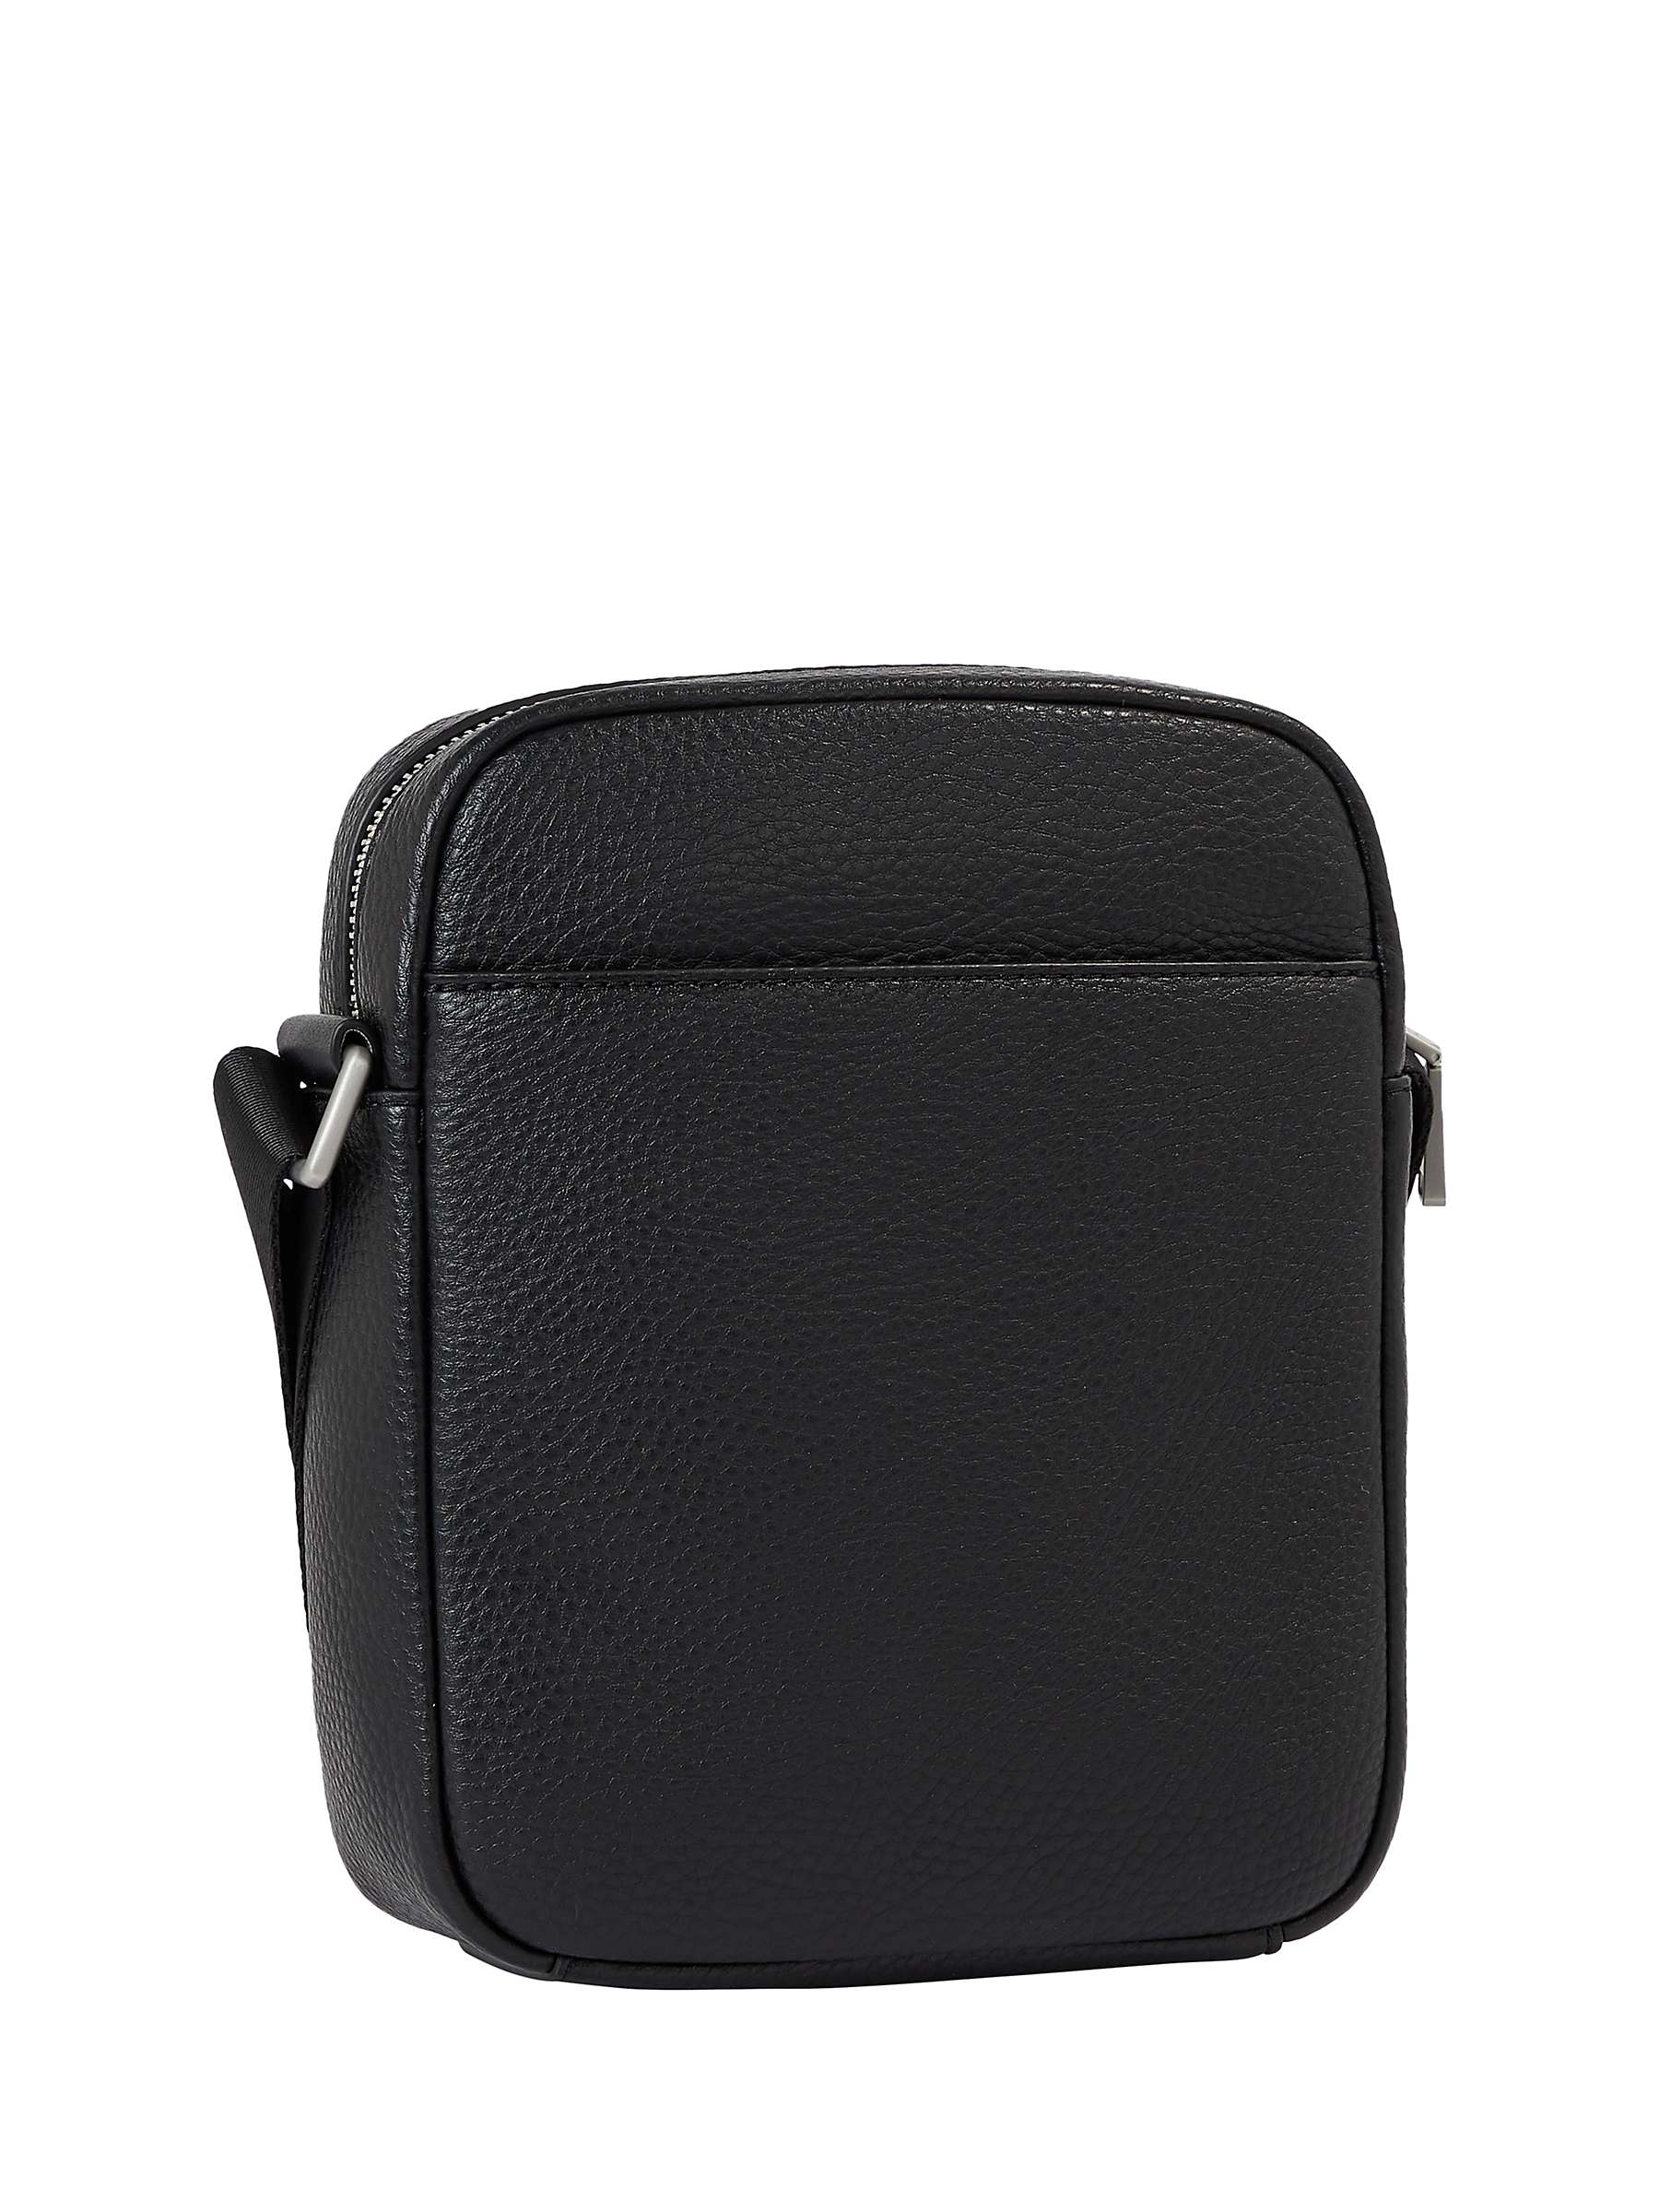 Buy Tommy Hilfiger Mini Reporter Messenger Bag, Black Online at johnlewis.com